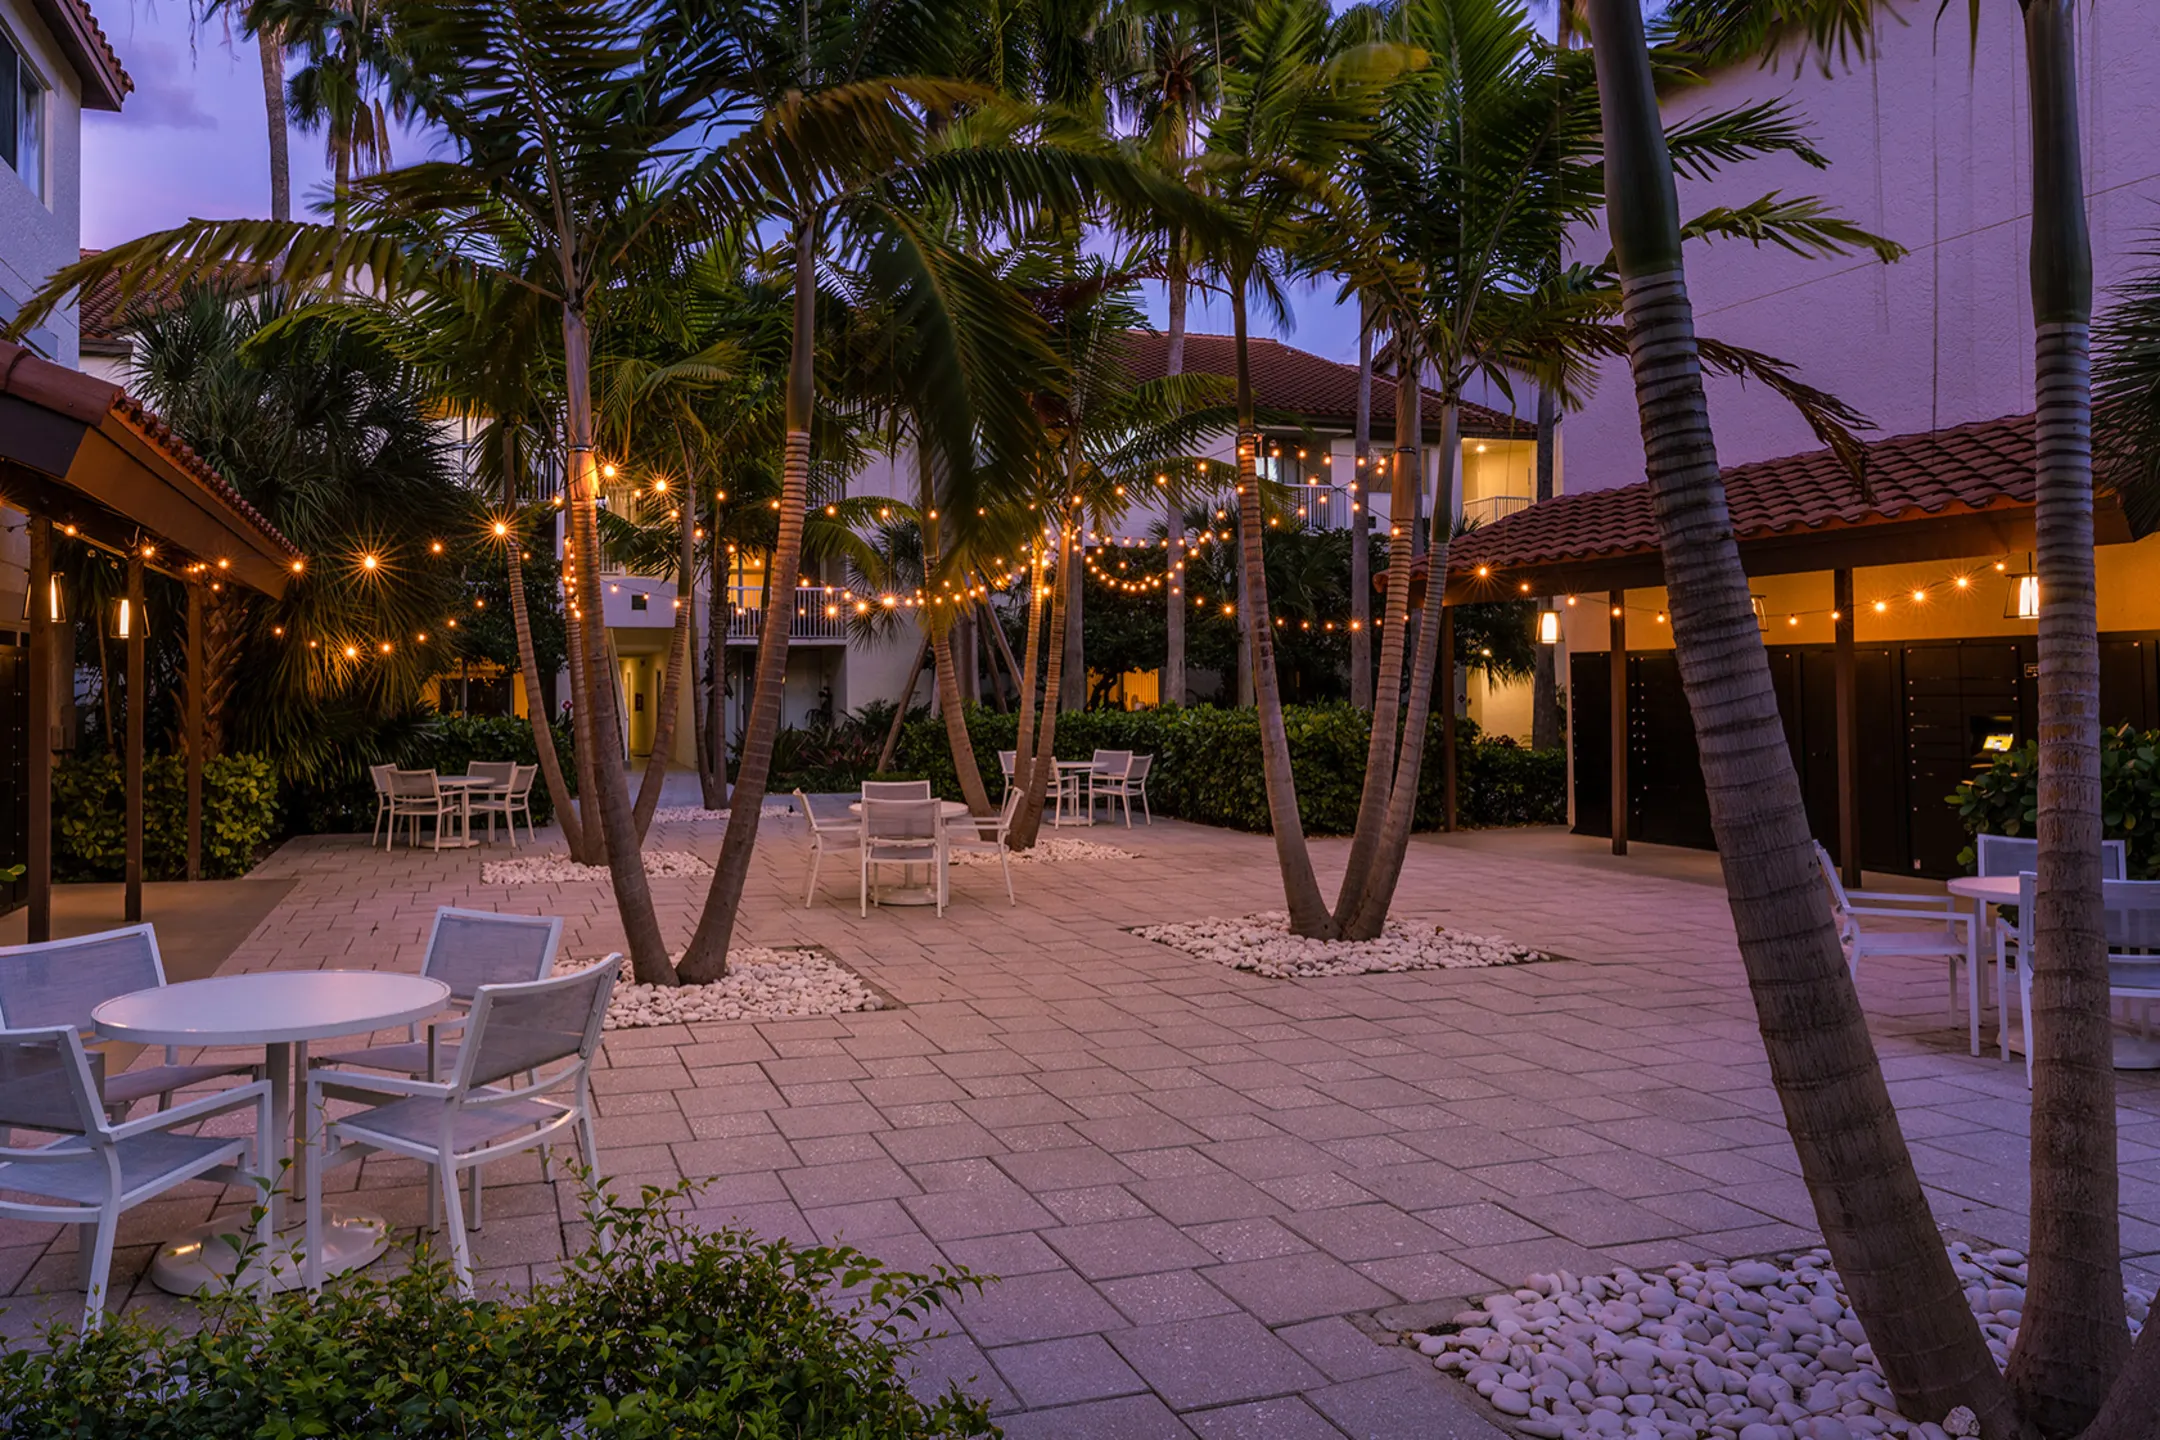 Pool - Waterways Village Apartments - Miami, FL